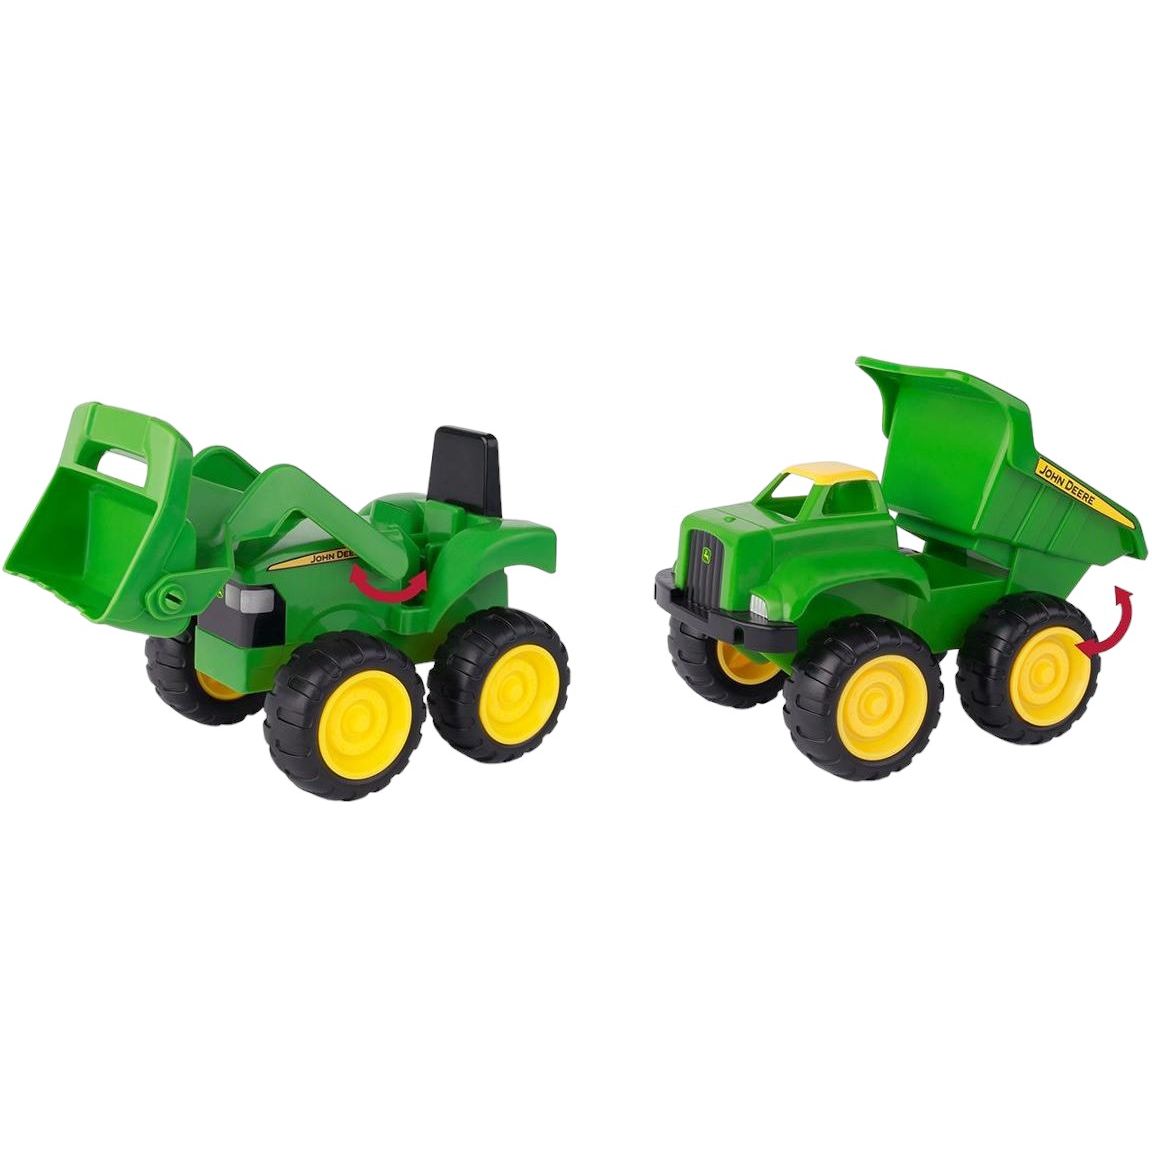 Набор для песка John Deere Kids Трактор и самосвал (35874) - фото 1